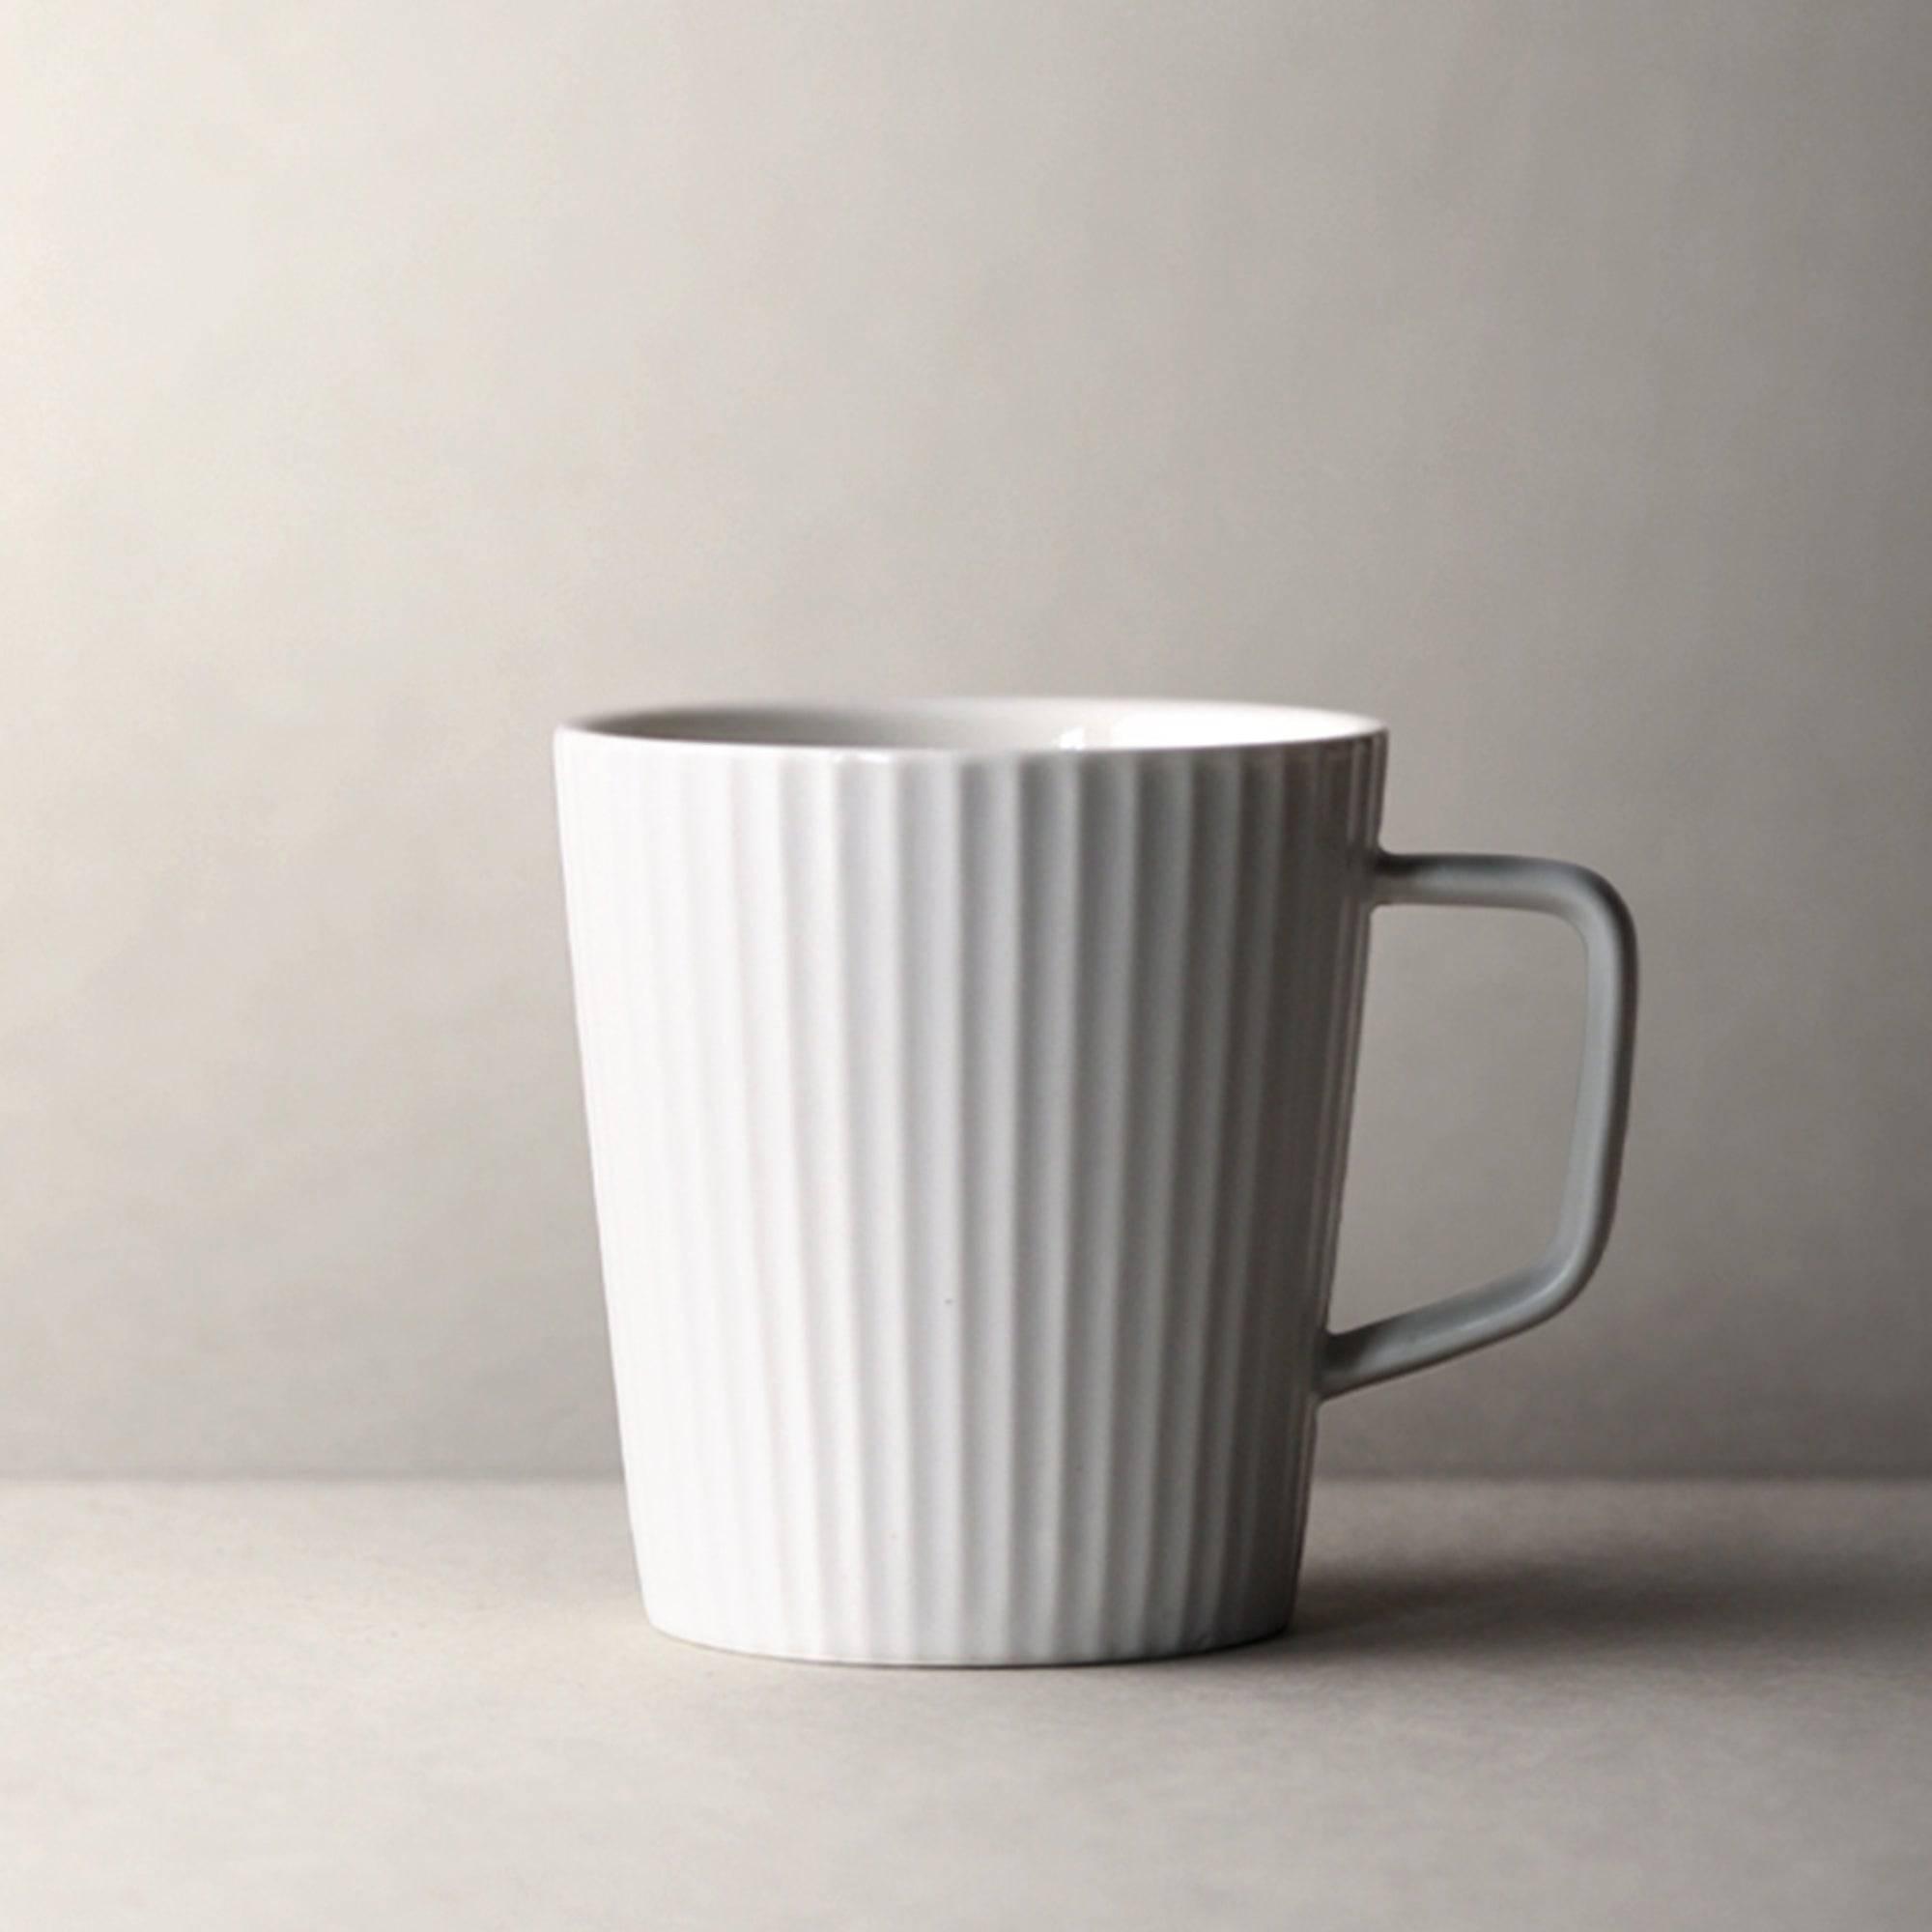 https://eunaliving.com/cdn/shop/products/scandinavian-handmade-minimalist-mug-set-eunaliving-3.jpg?v=1656838735